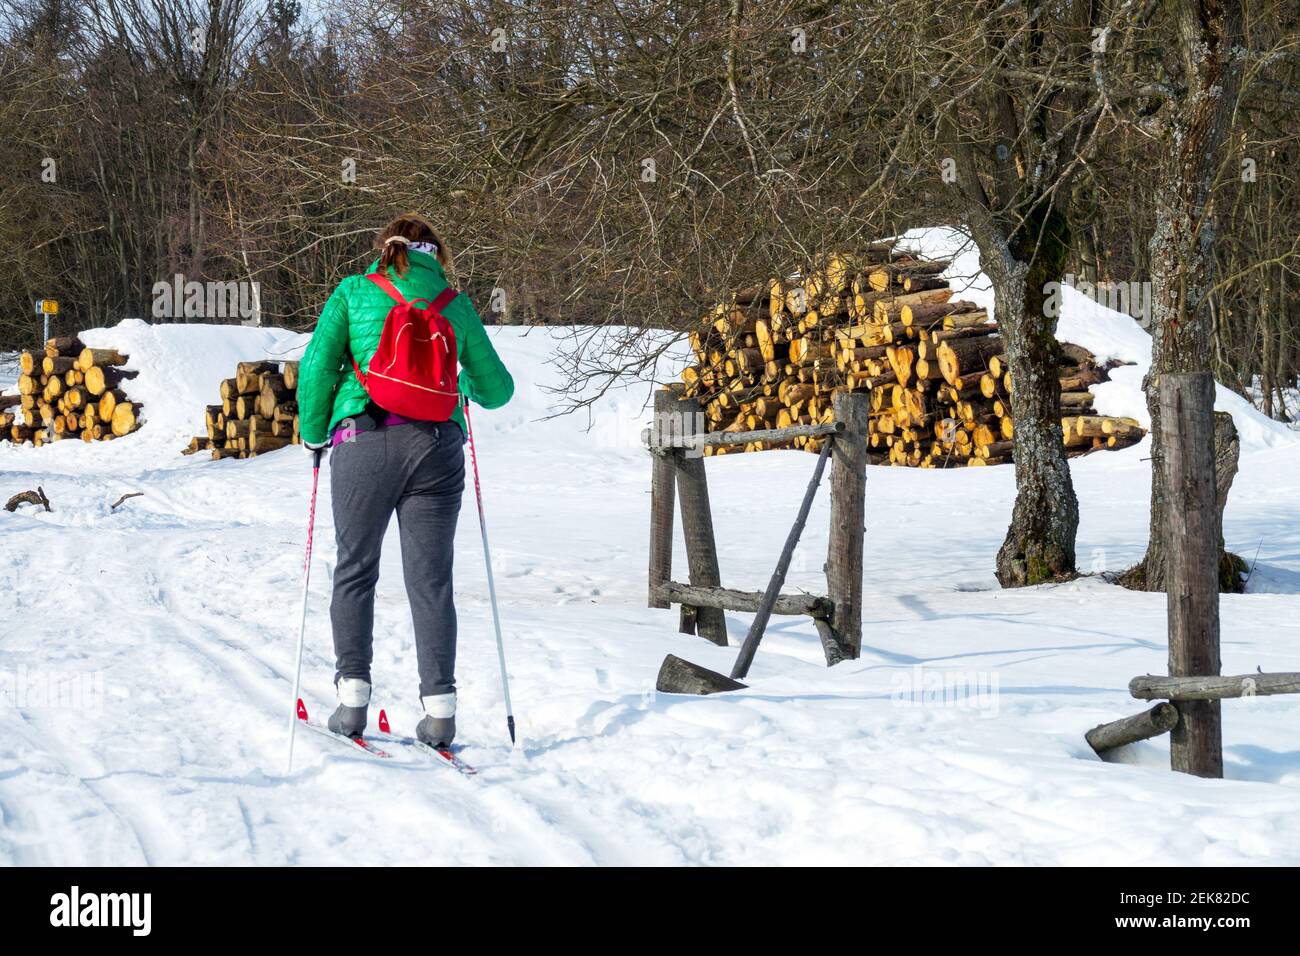 Femme skiant dans le paysage rural, skieur de fond mode de vie sain, femme active marchant dans la campagne hiver Banque D'Images